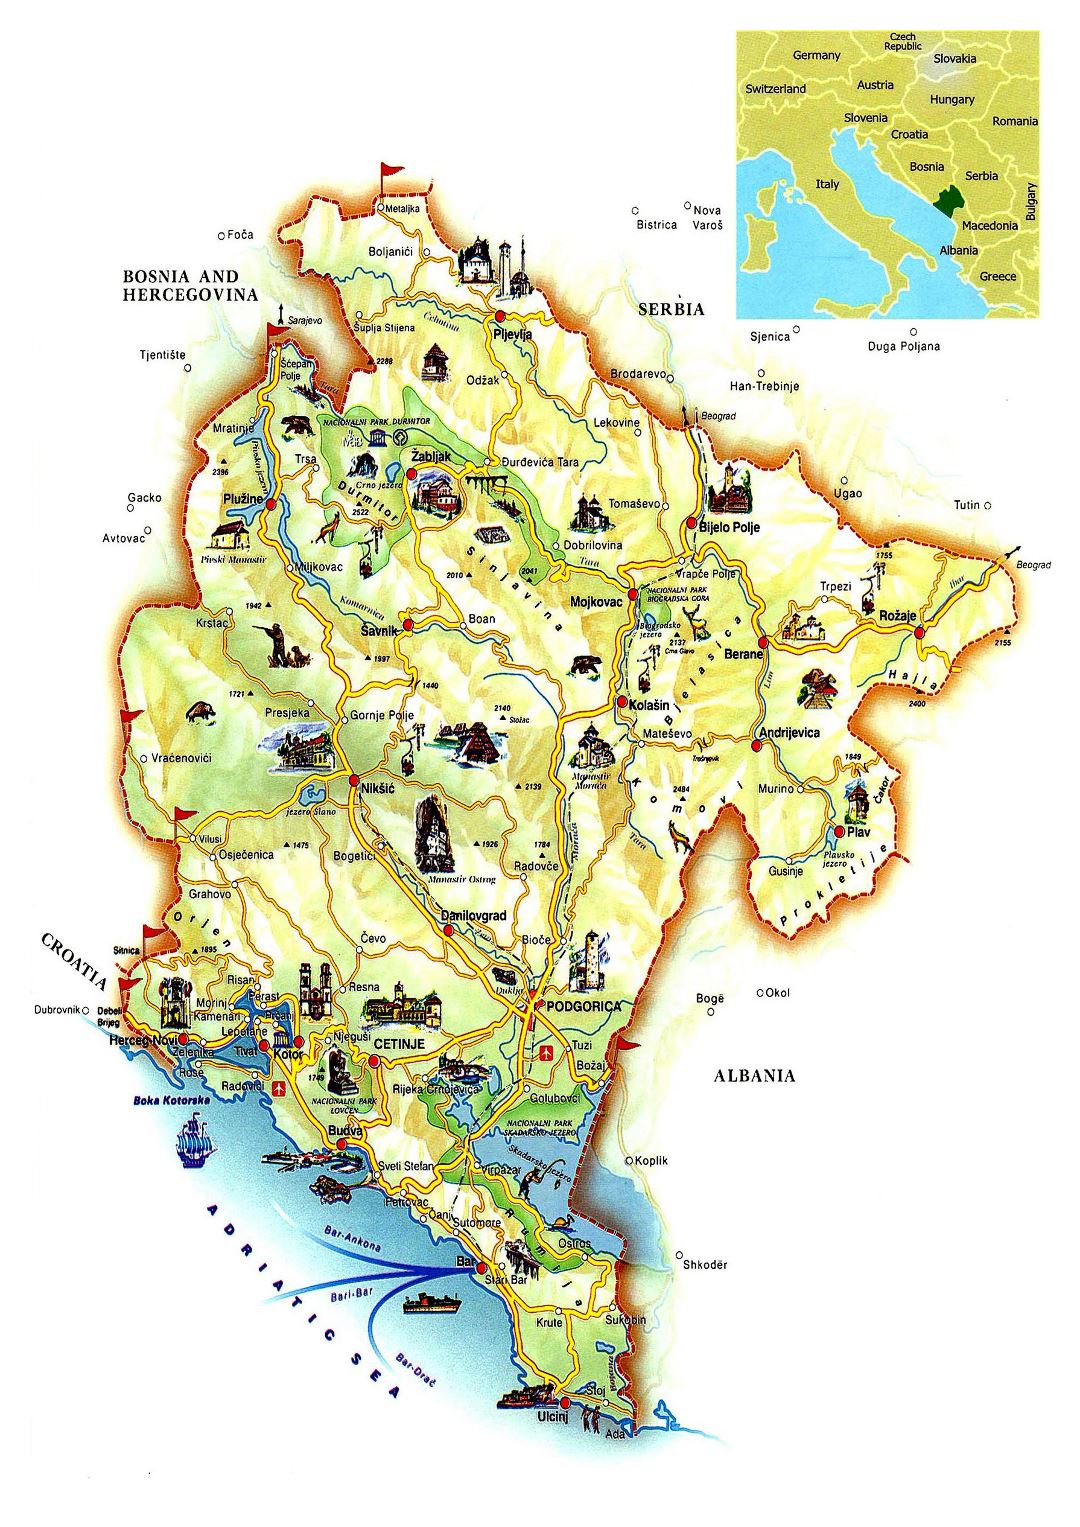 Grande detallado mapa turística de Montenegro